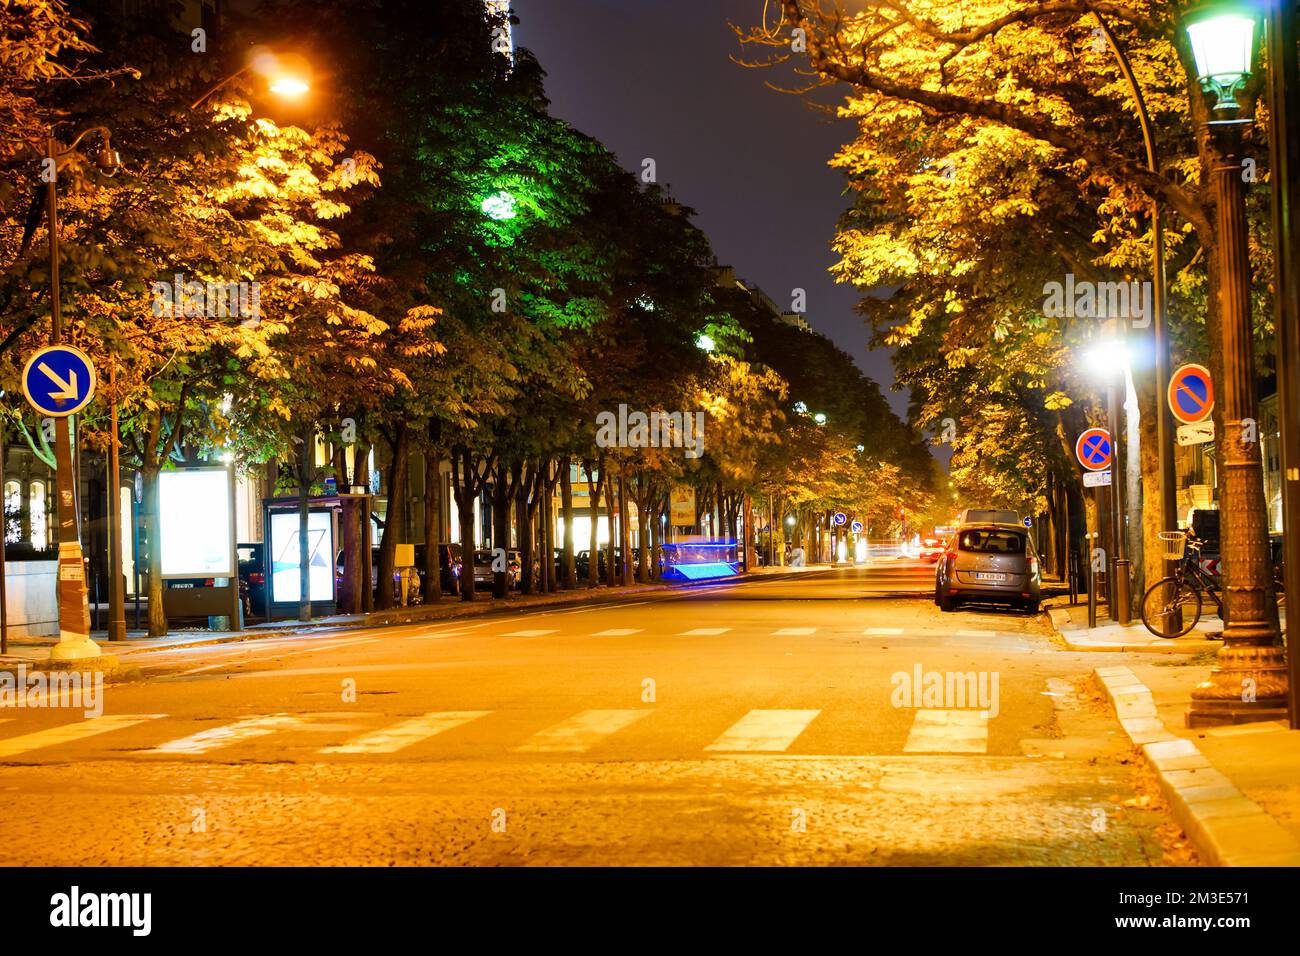 PARIS - 07. September: Paris bei Nacht am 07. September 2014 in Paris, Frankreich. Nacht Paris hat magische Atmosphäre, ohne die jede Reise nach Paris inco wäre Stockfoto